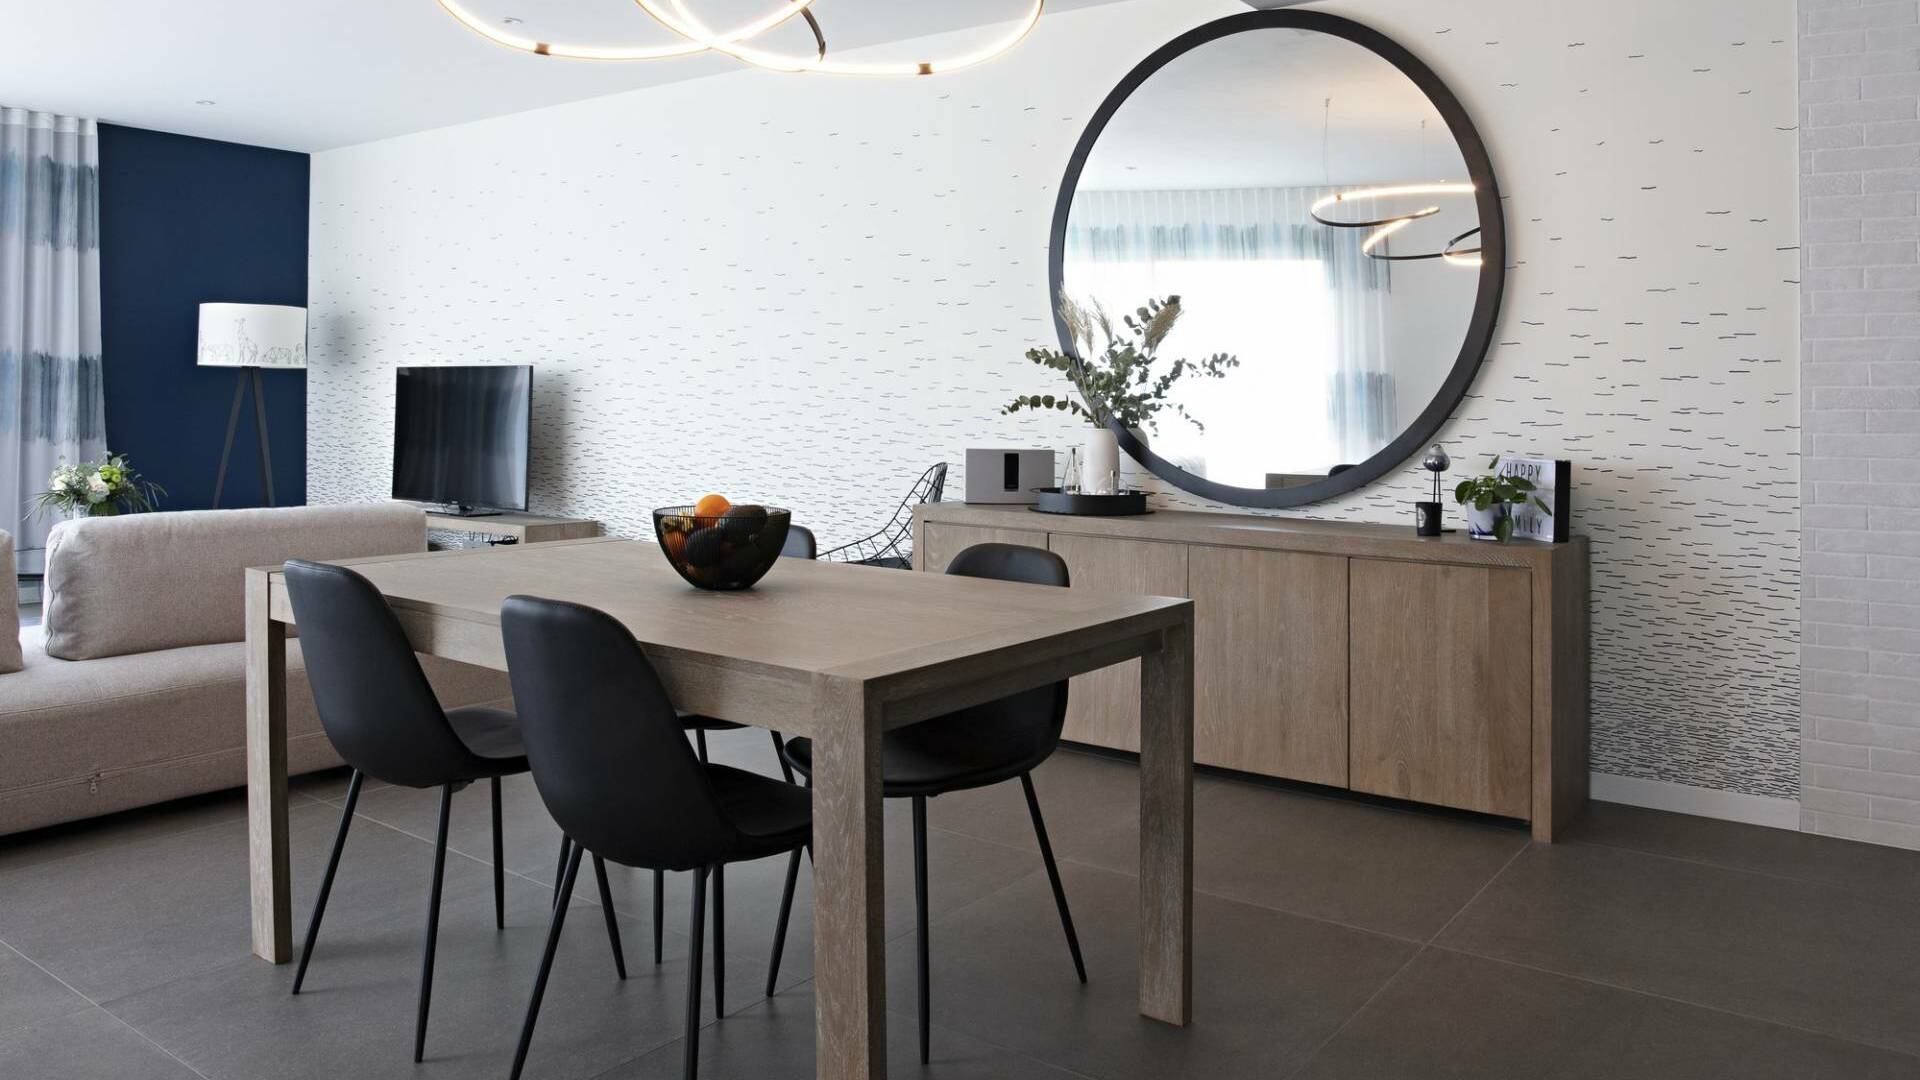 Décoration et agencement d'une maison sur plans à Bédée - séjour avec meubles en bois, chaises, suspension et miroir XXL noirs